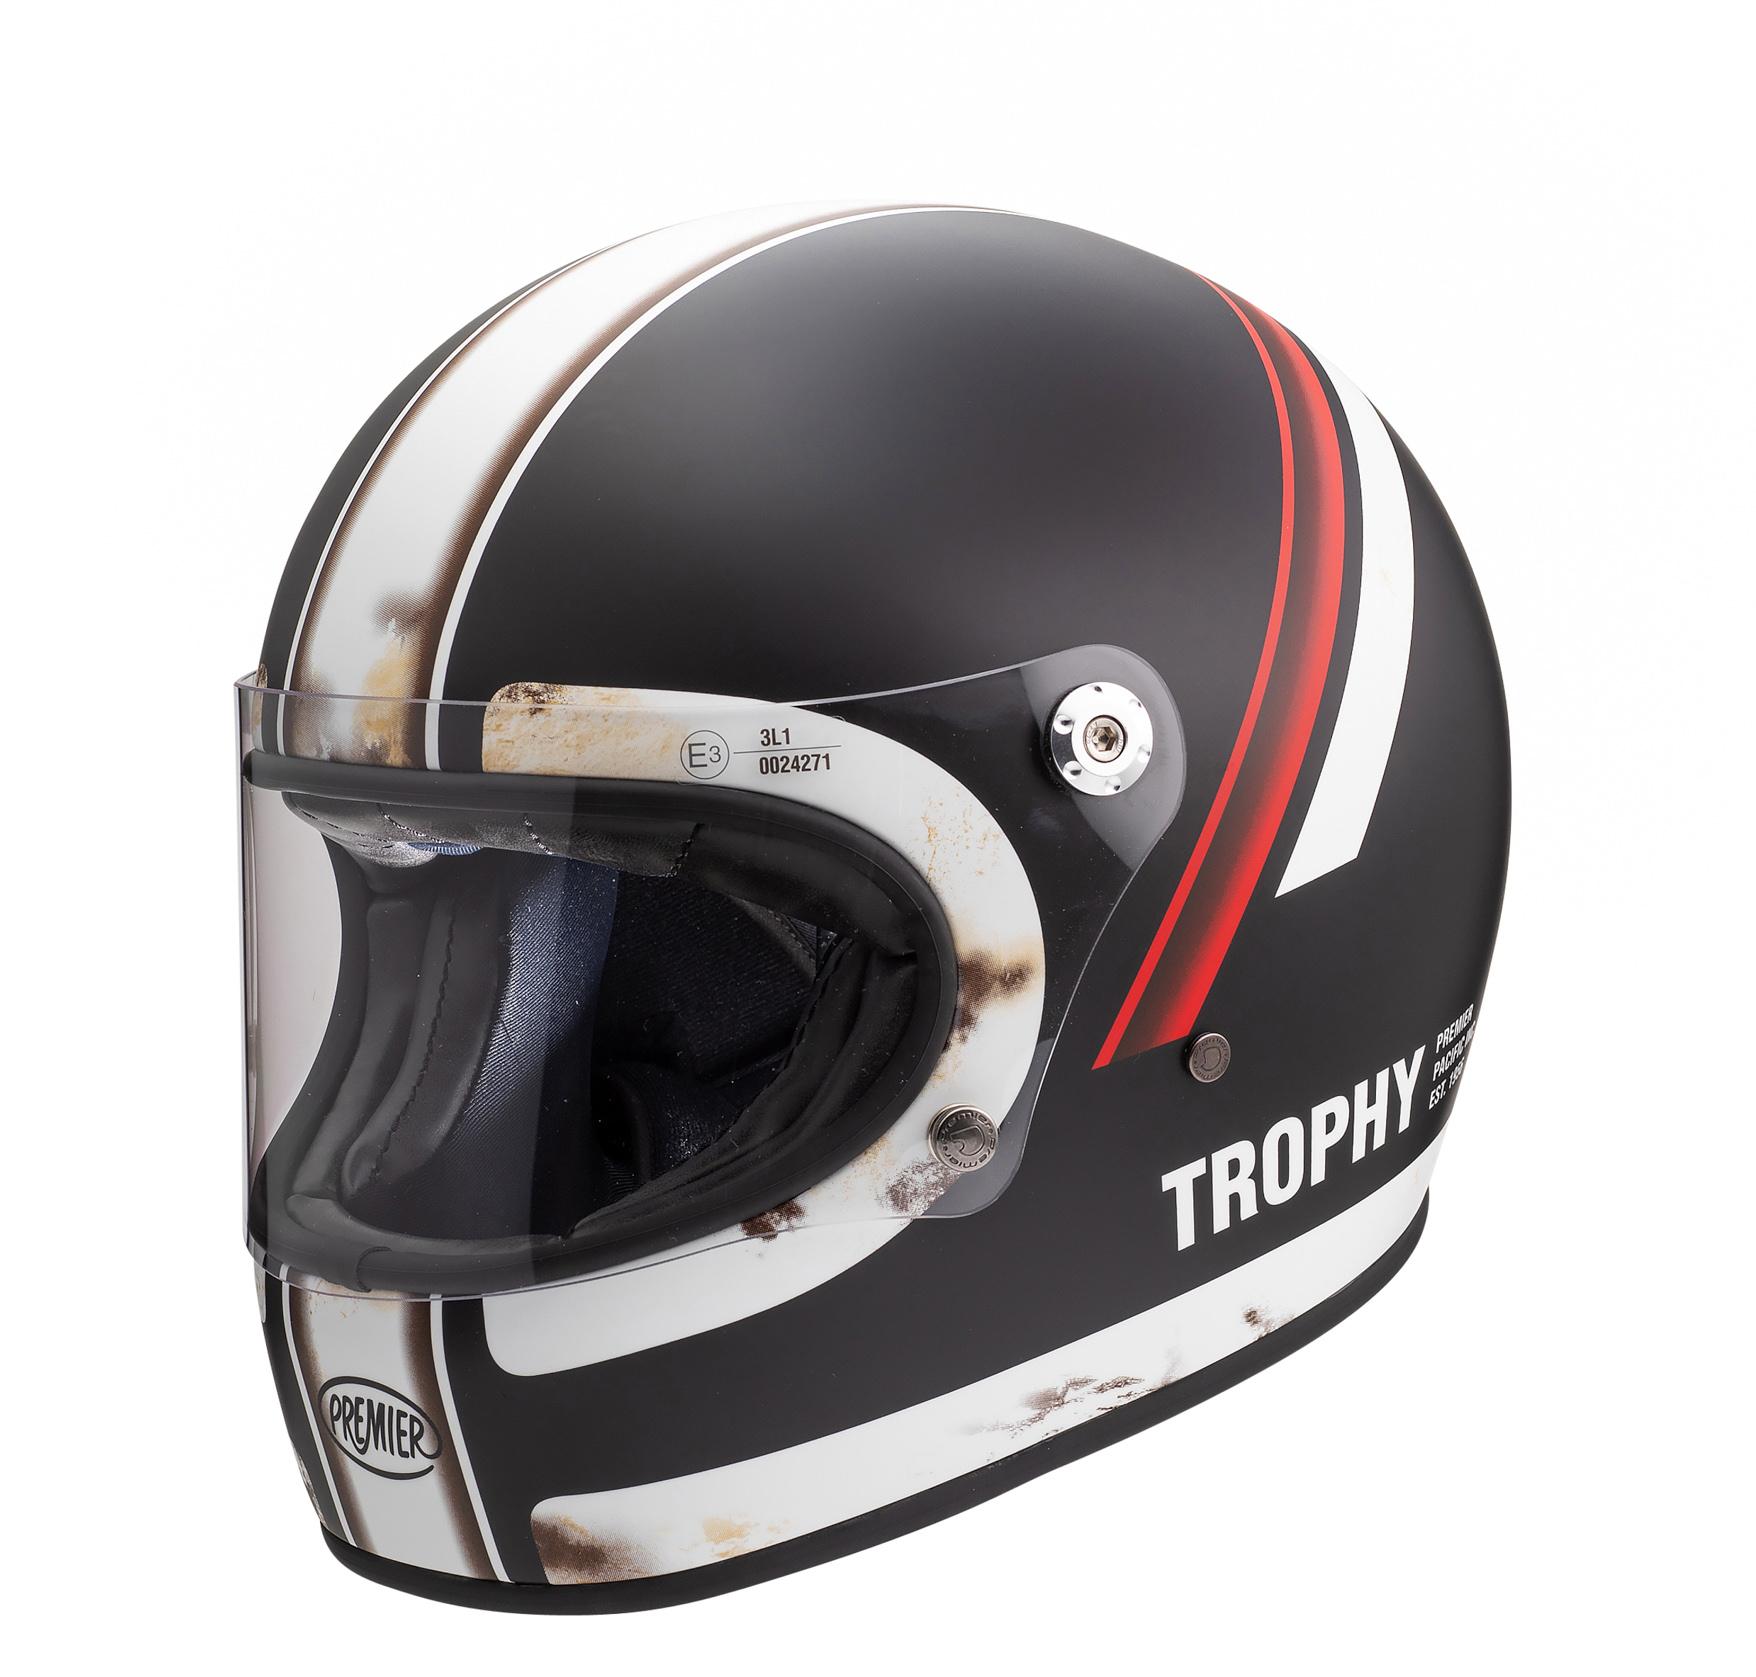 Premier Trophy Full Face Motorcycle Helmet Do - Black/White, S